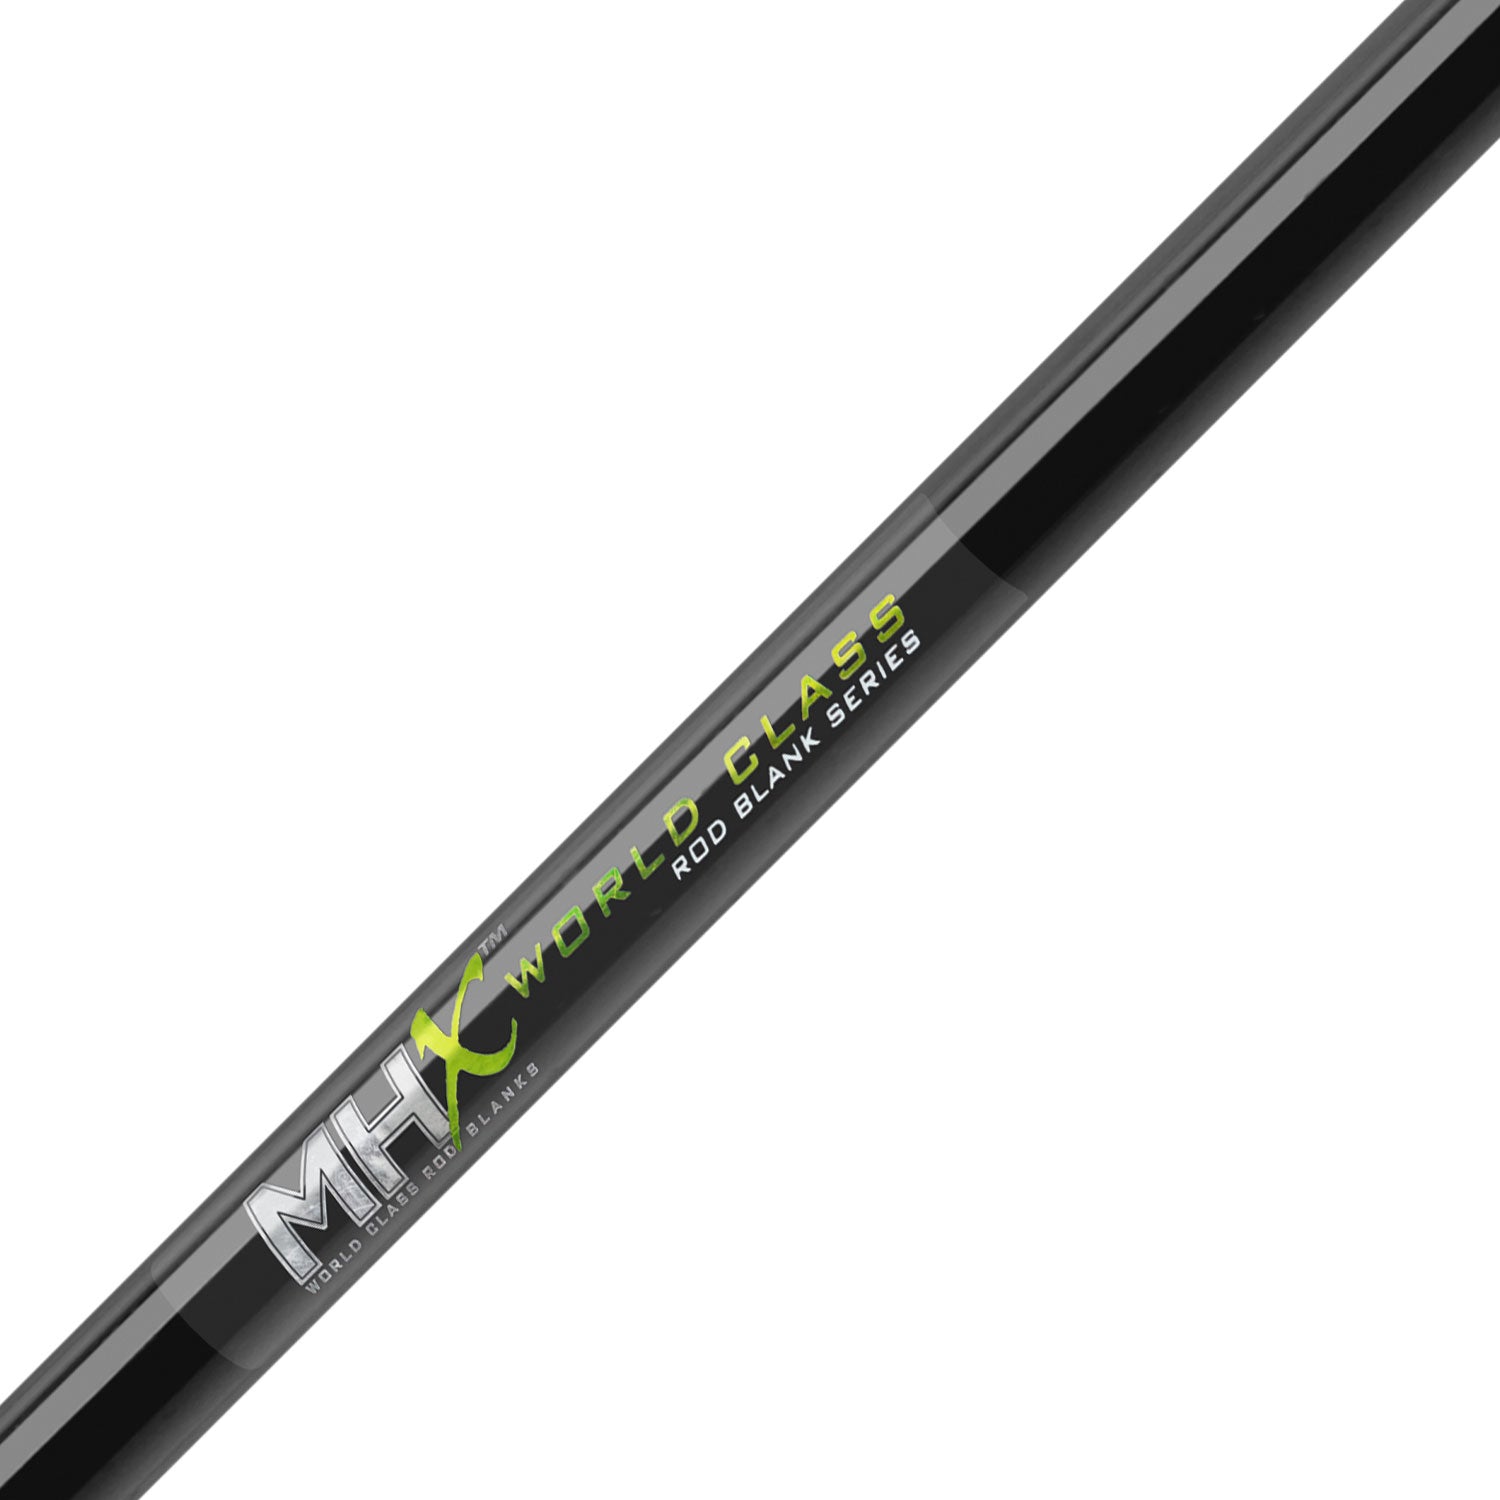 MHX 7'6" Med-Light Light Saltwater Rod Blank - L902-MHX